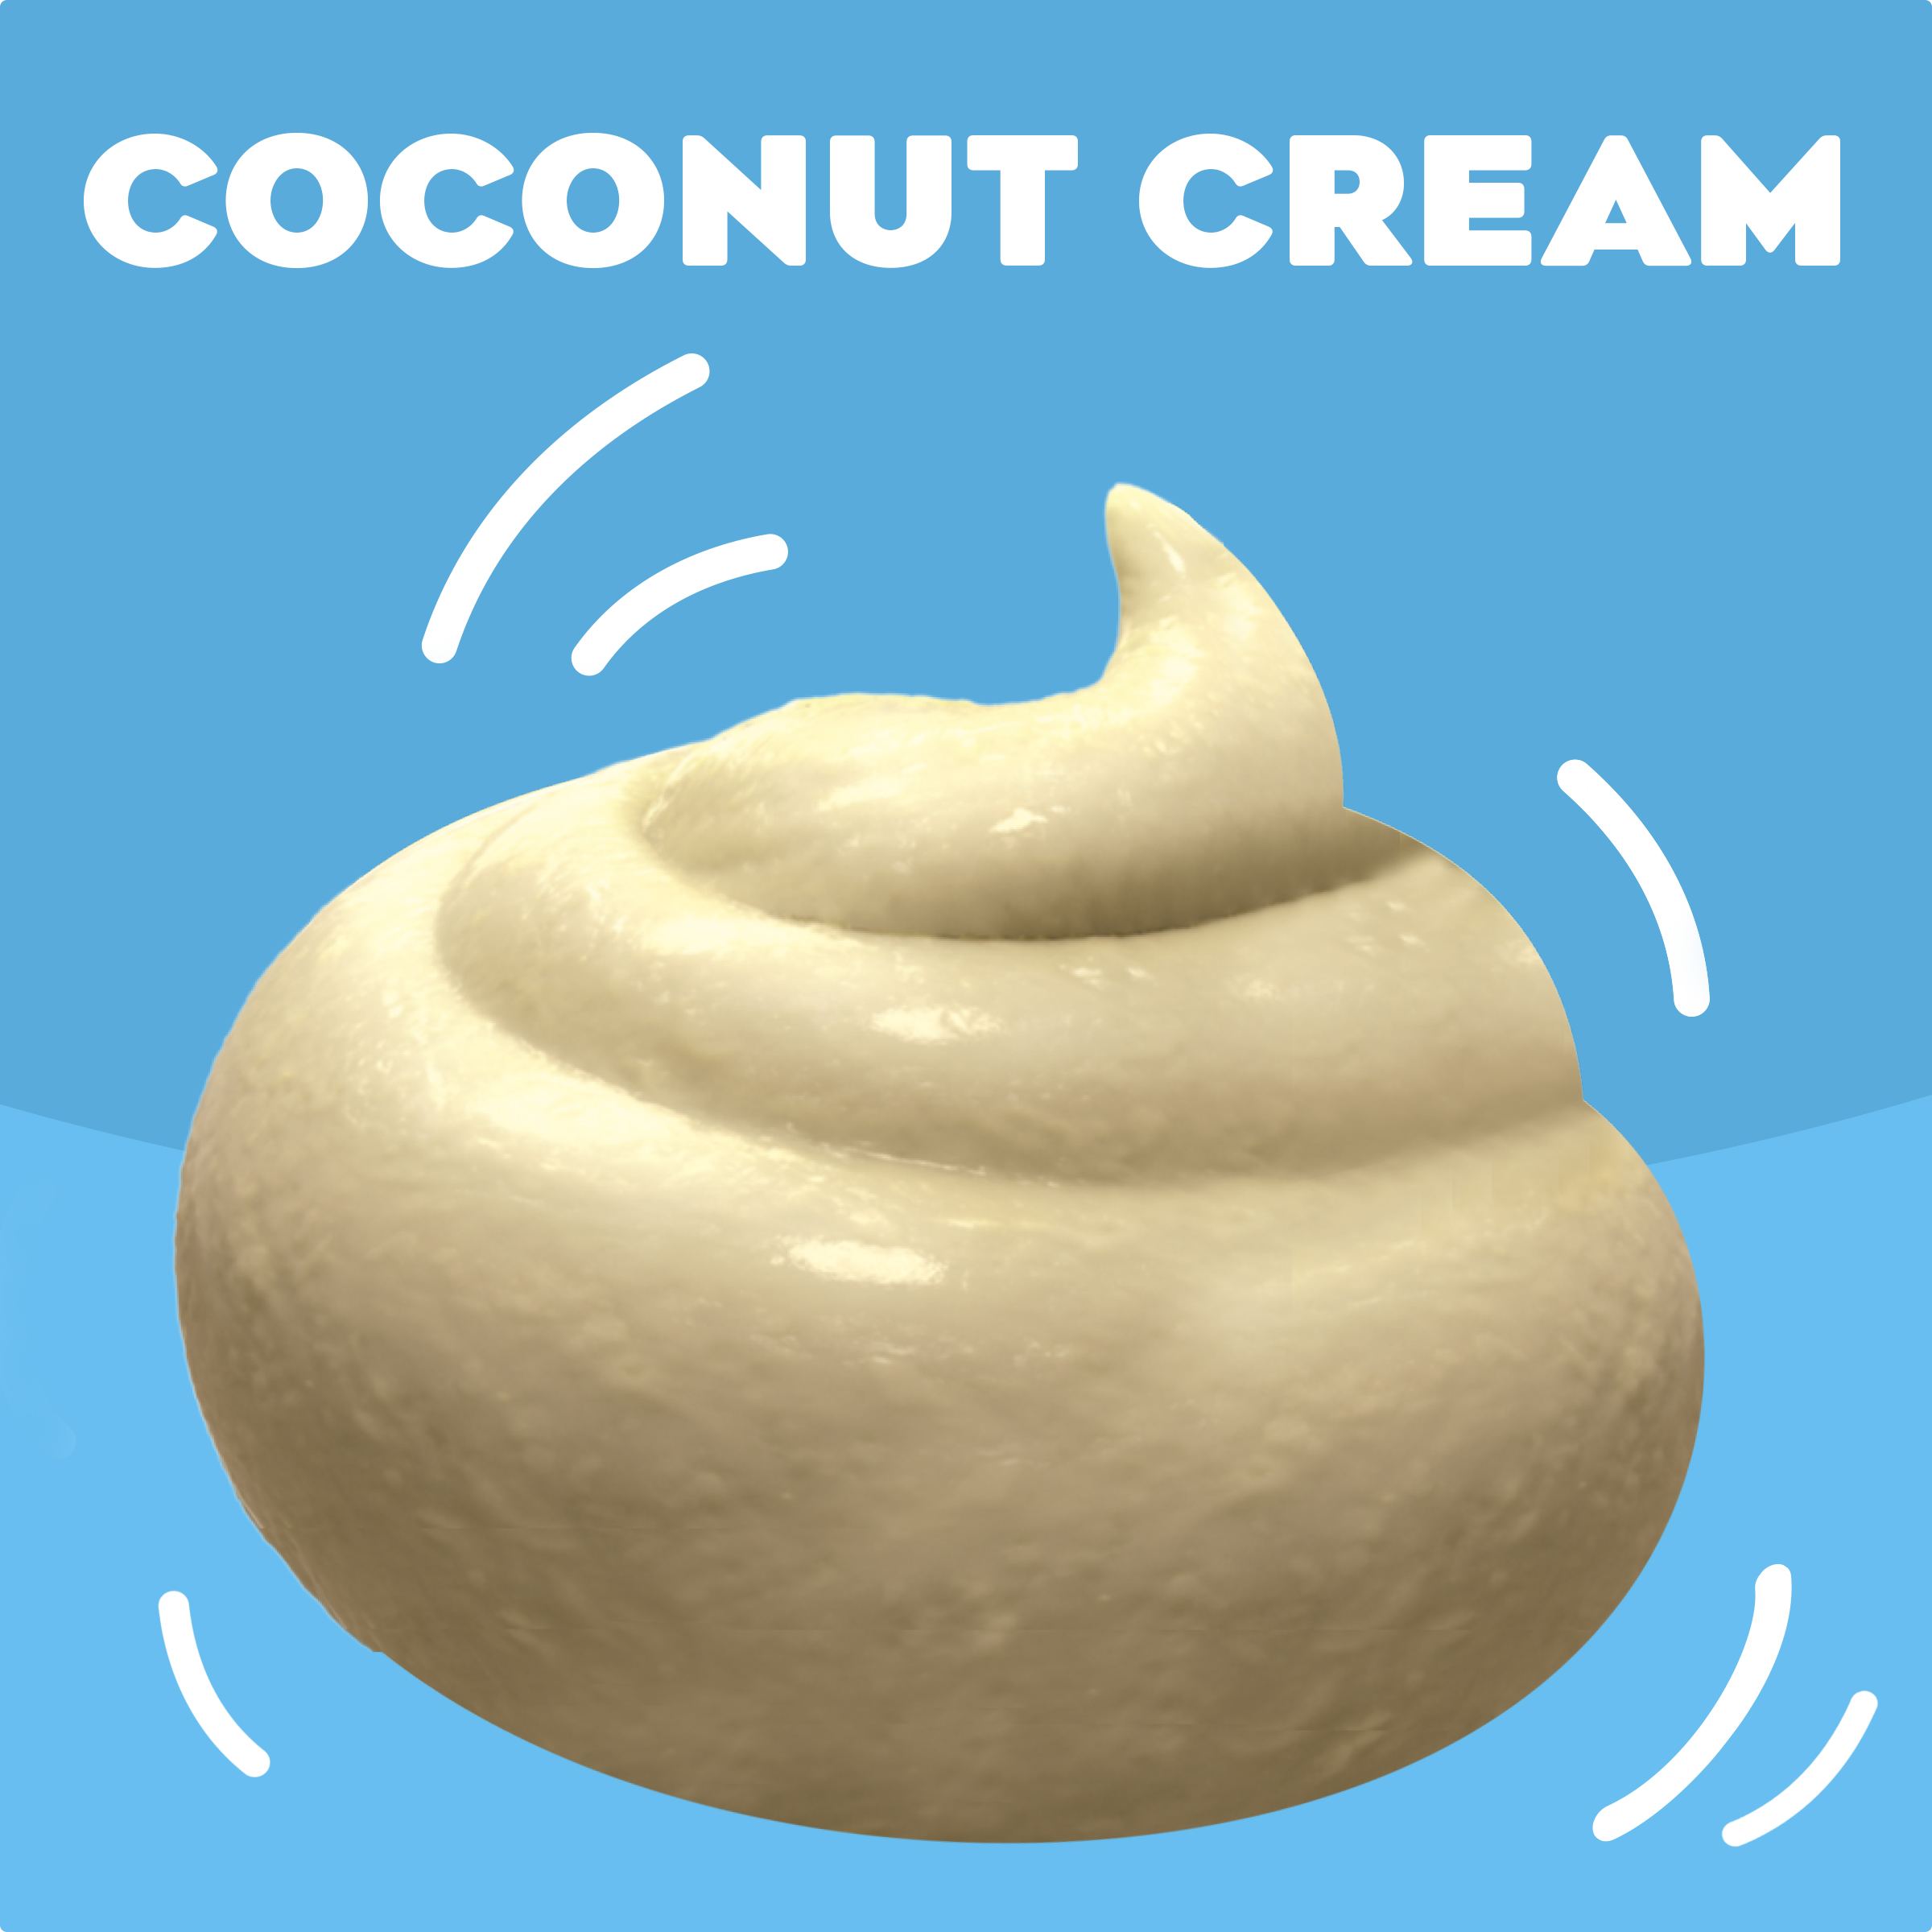 Coconut Cream Instant Pudding & Pie Filling Mix